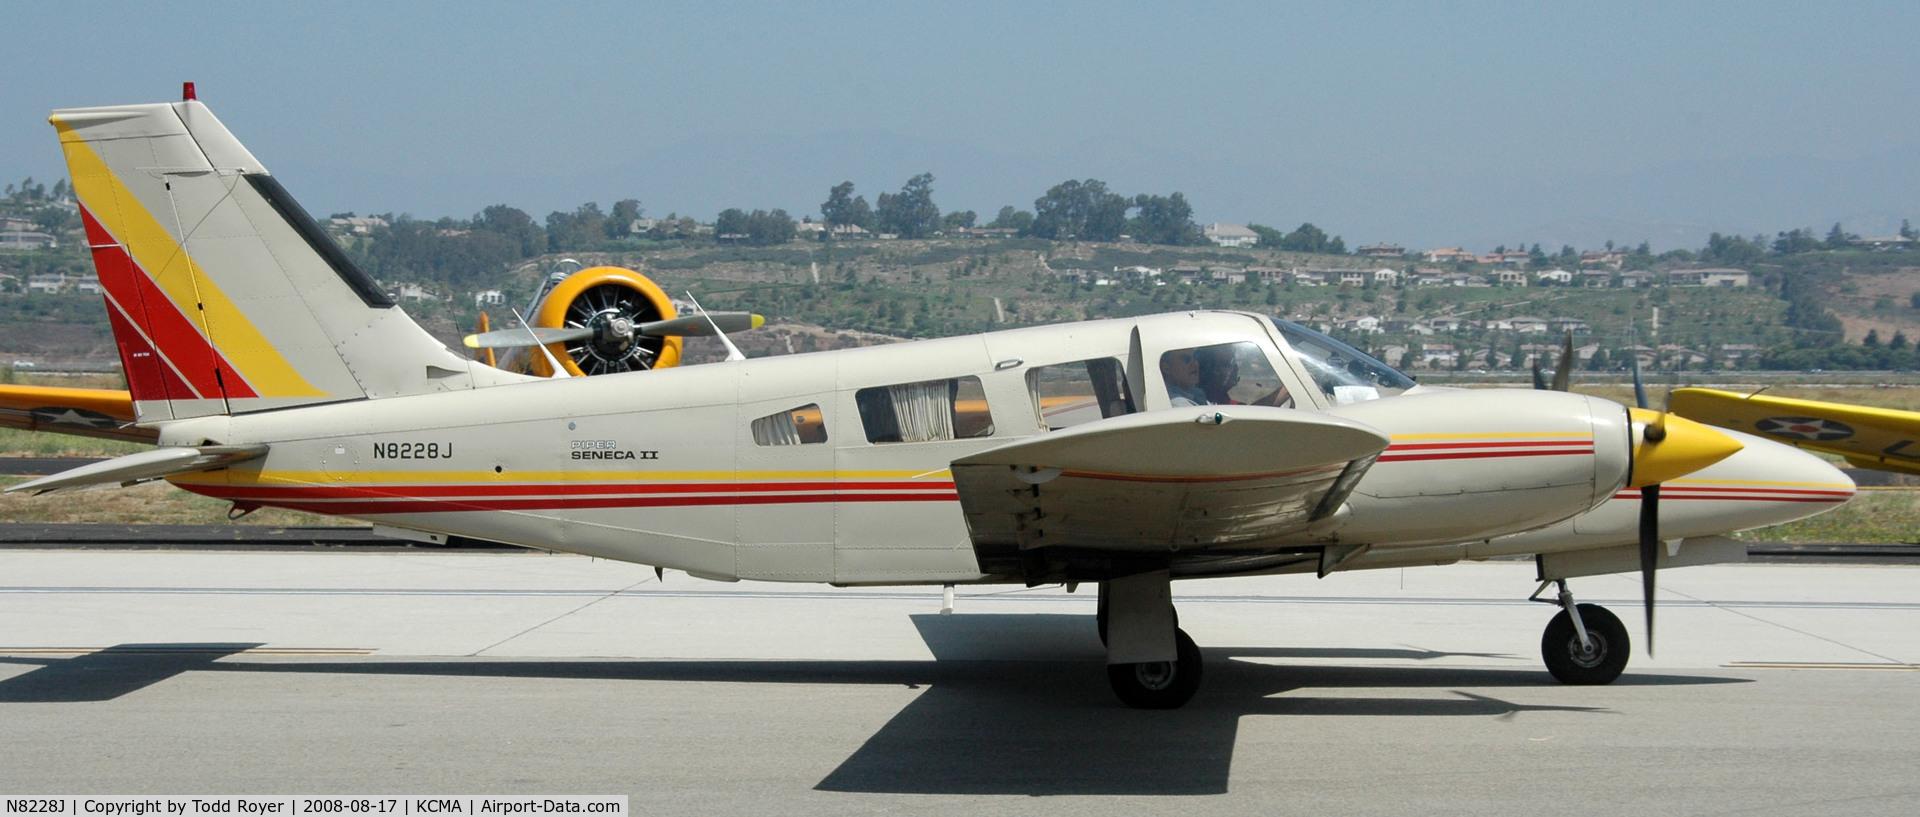 N8228J, 1980 Piper PA-34-200T C/N 34-8070252, Camarillo Airshow 2008